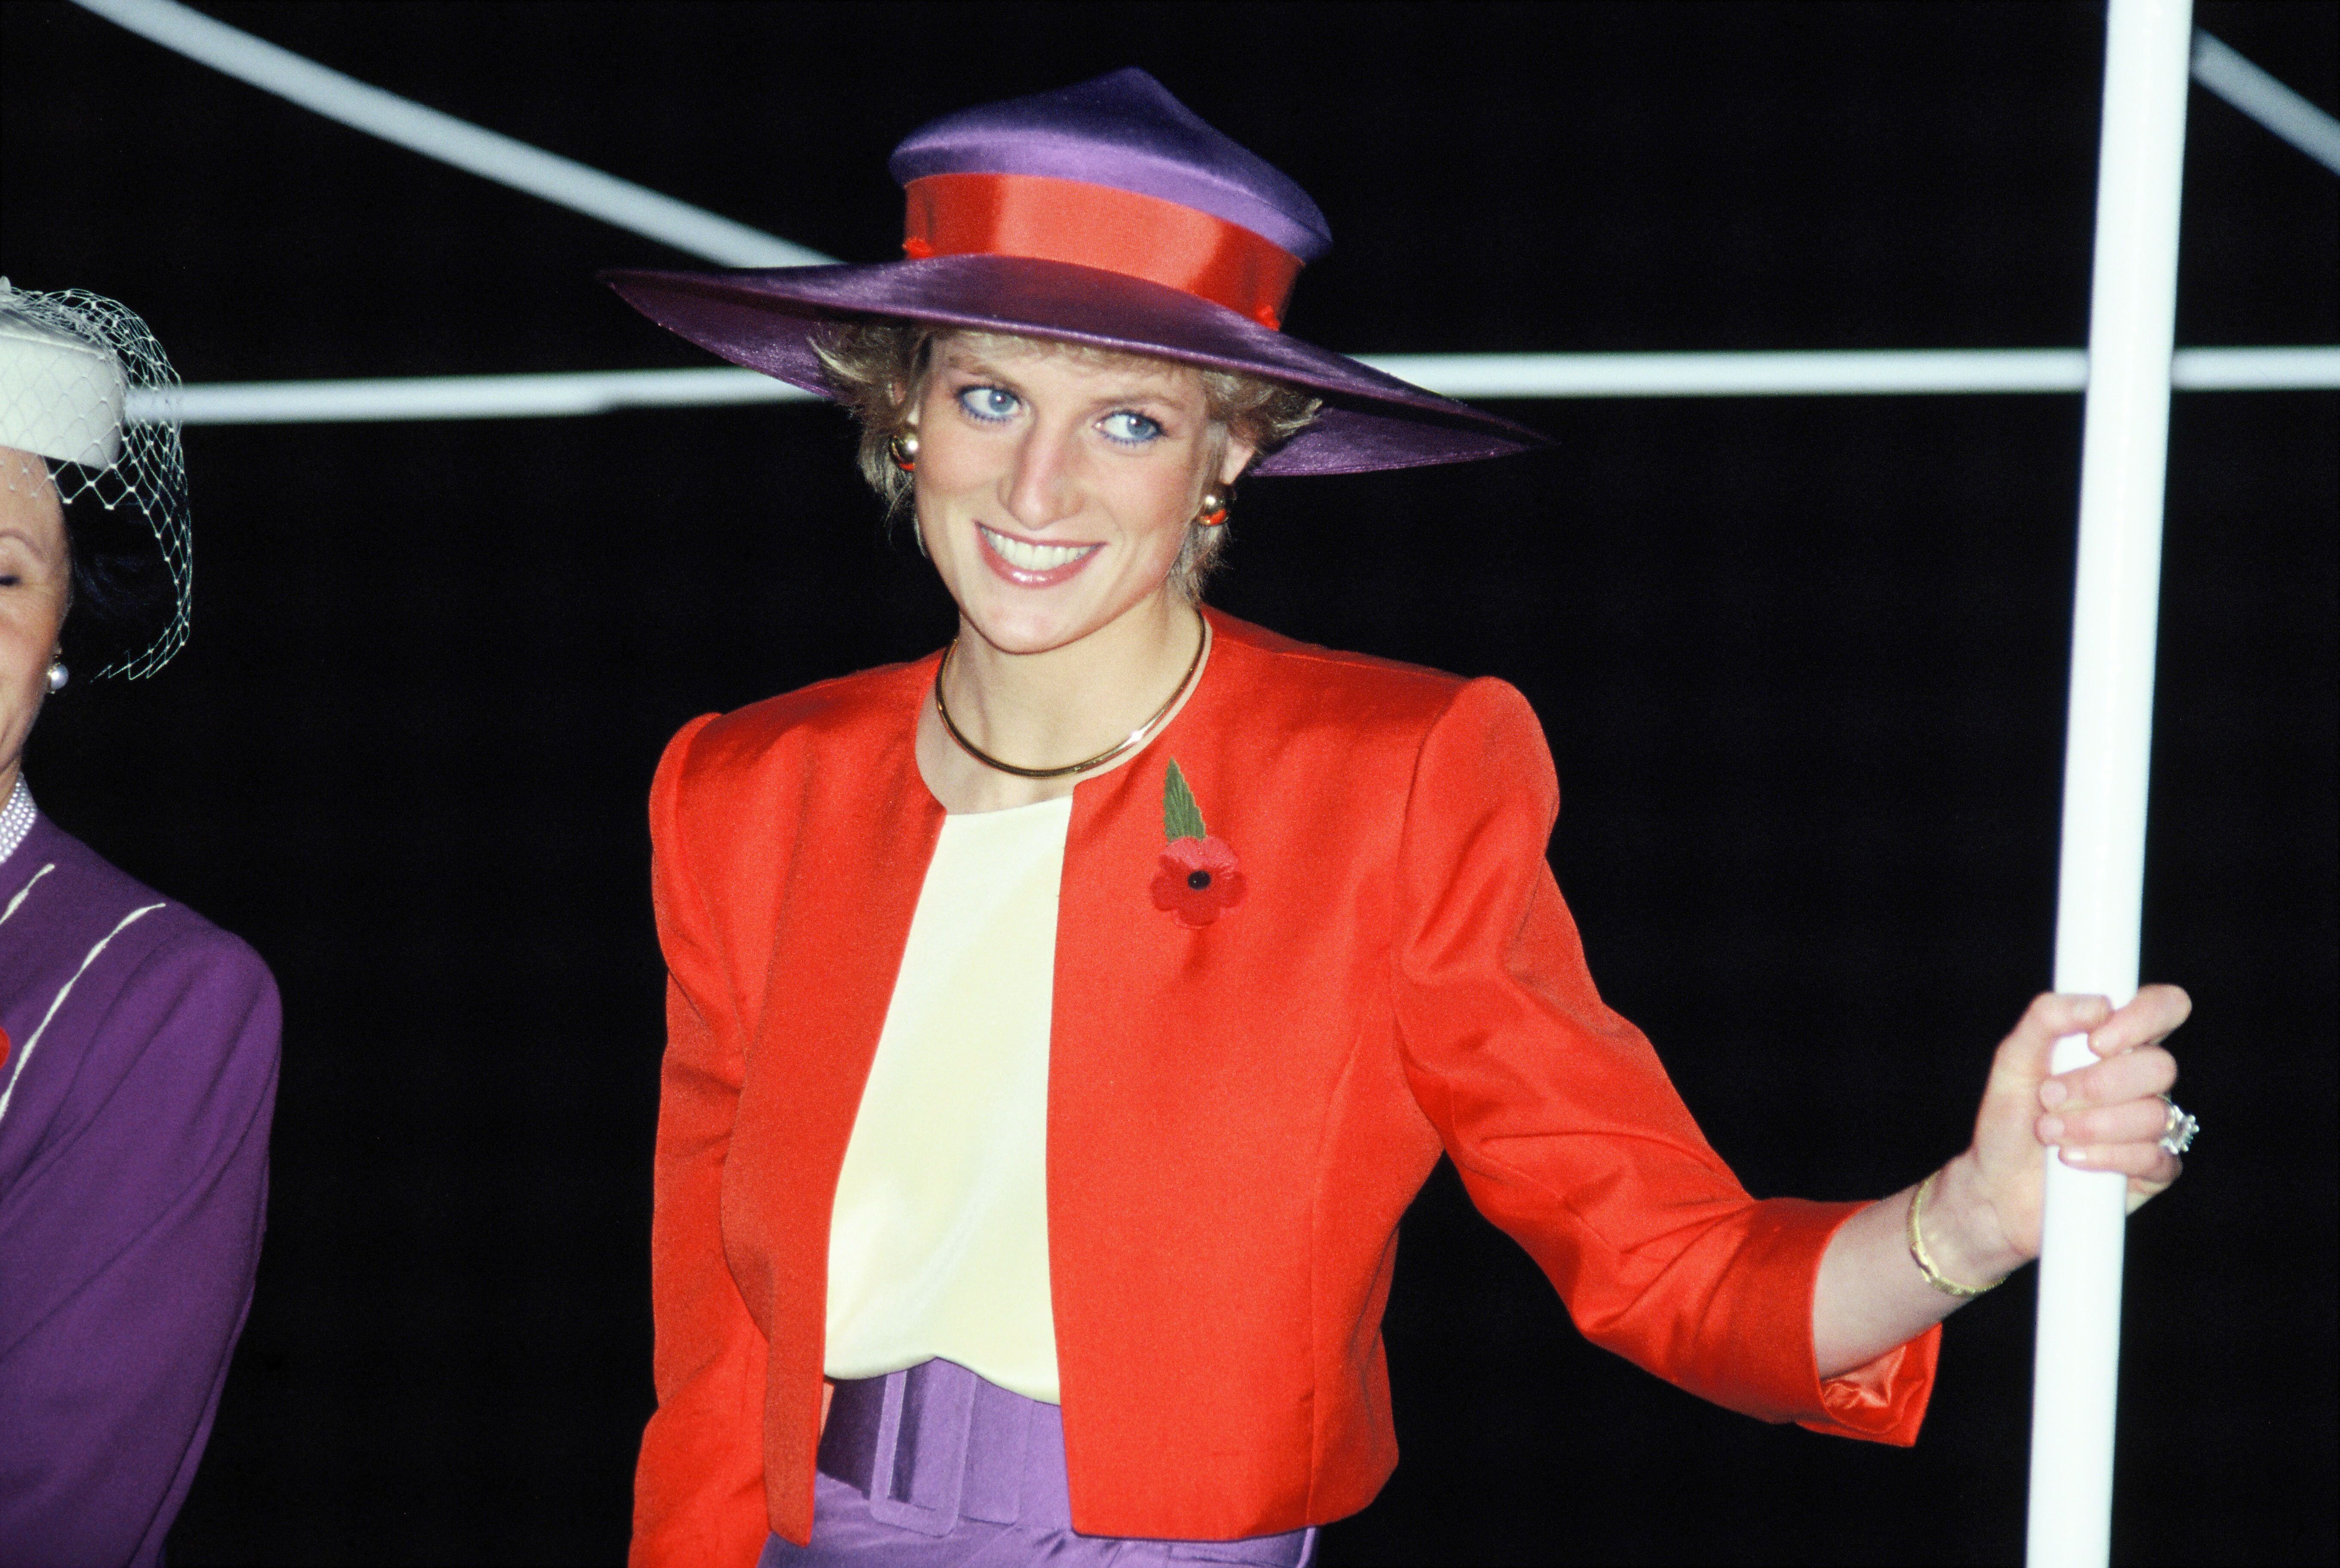 Diana, princesse de Galles, lors de sa visite officielle à Hong Kong. | Source: Getty Images